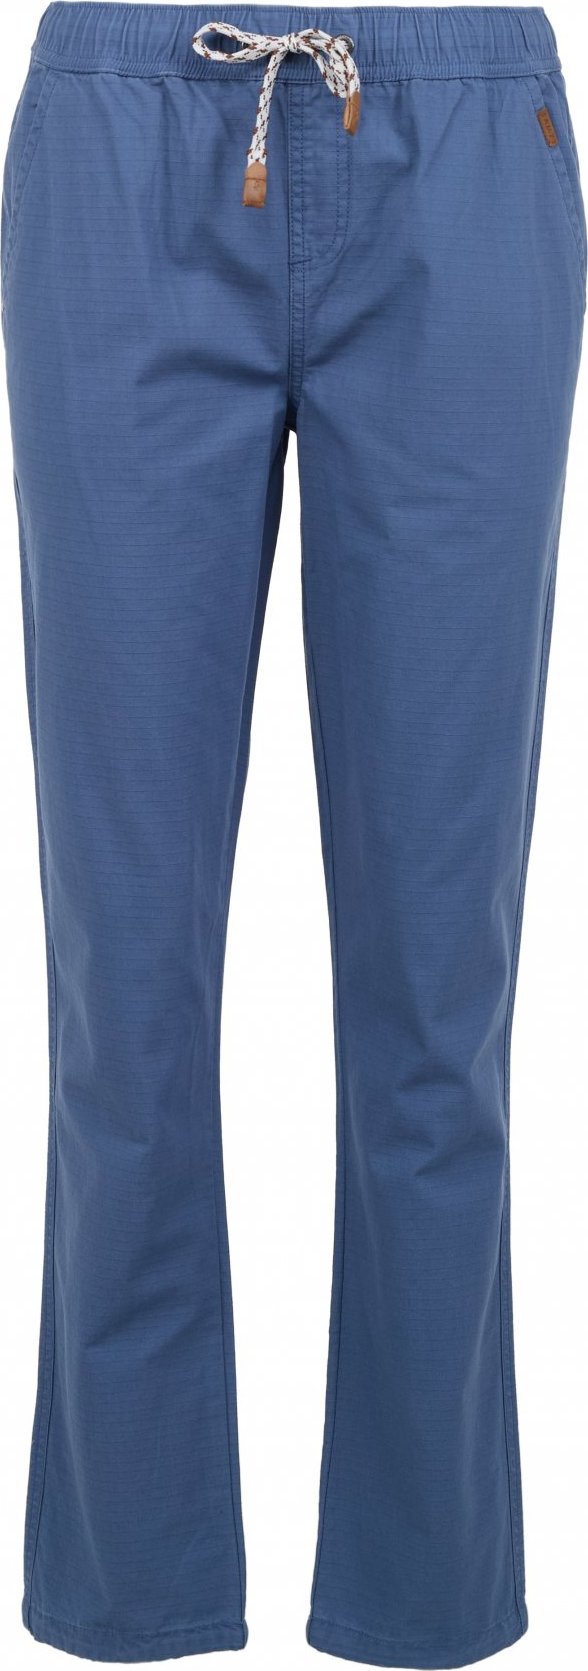 Dámské kalhoty SAM 73 Amalia modré Velikost: XL